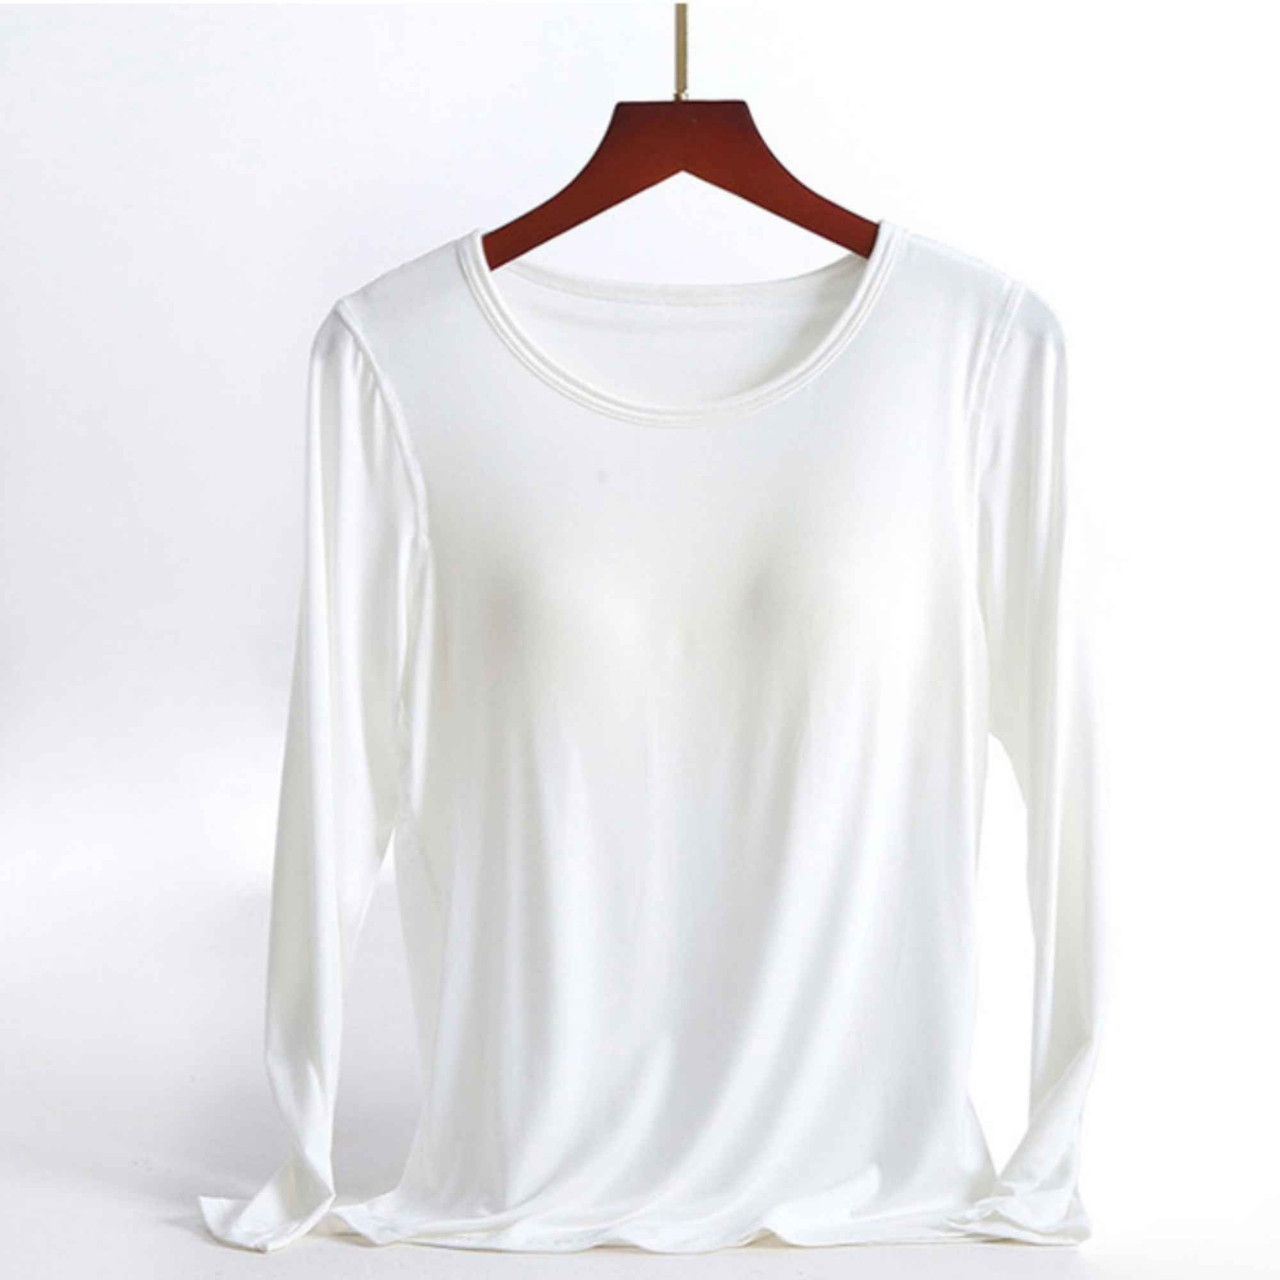 Women No Bra T-shirts| Shelf Bra Fall Scoop Neck Long Sleeve T-shirt